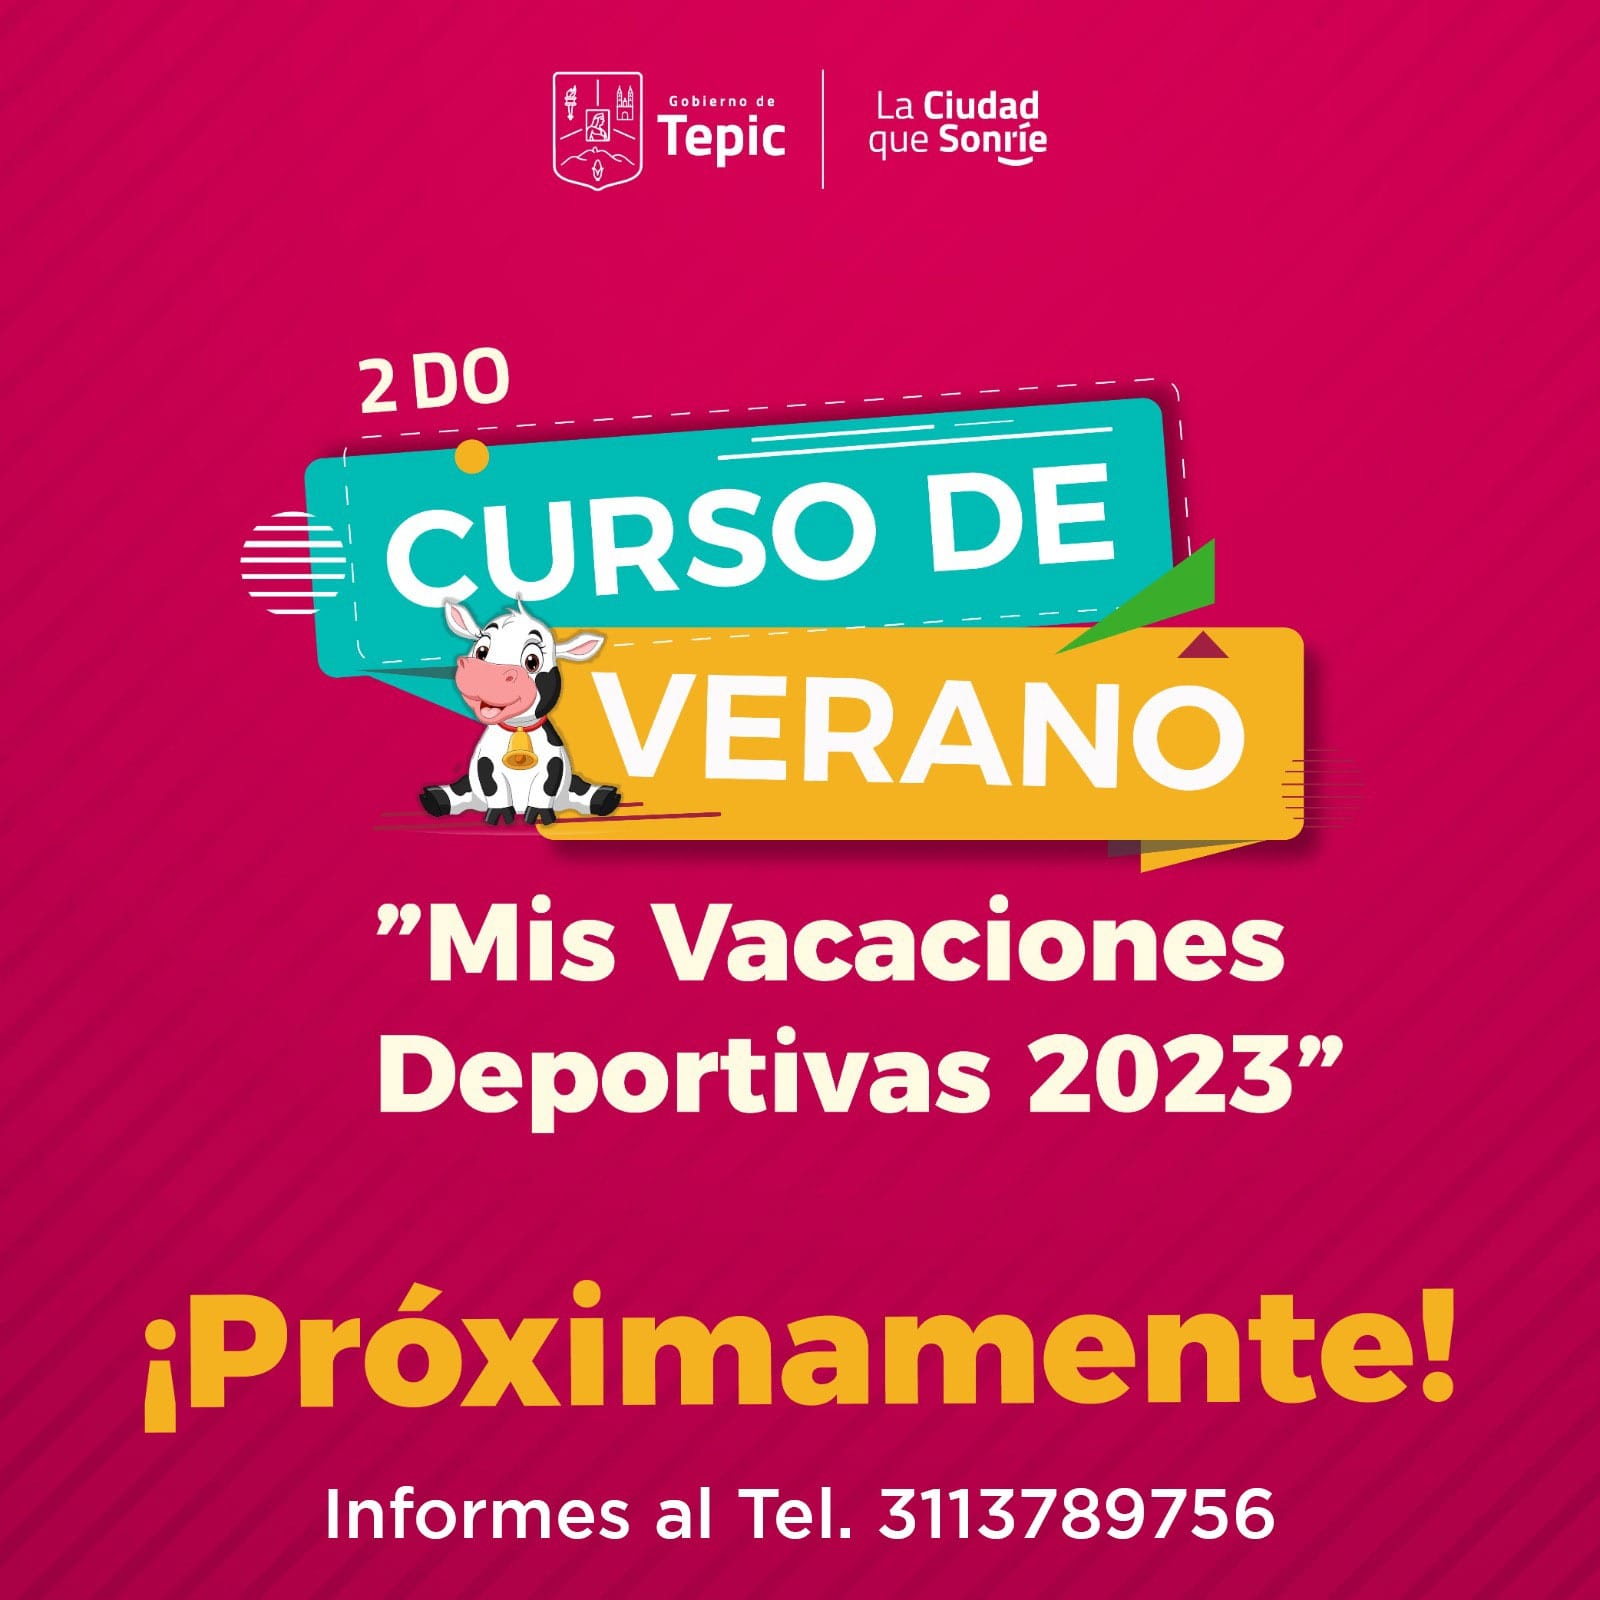 CursoDeVerano2023